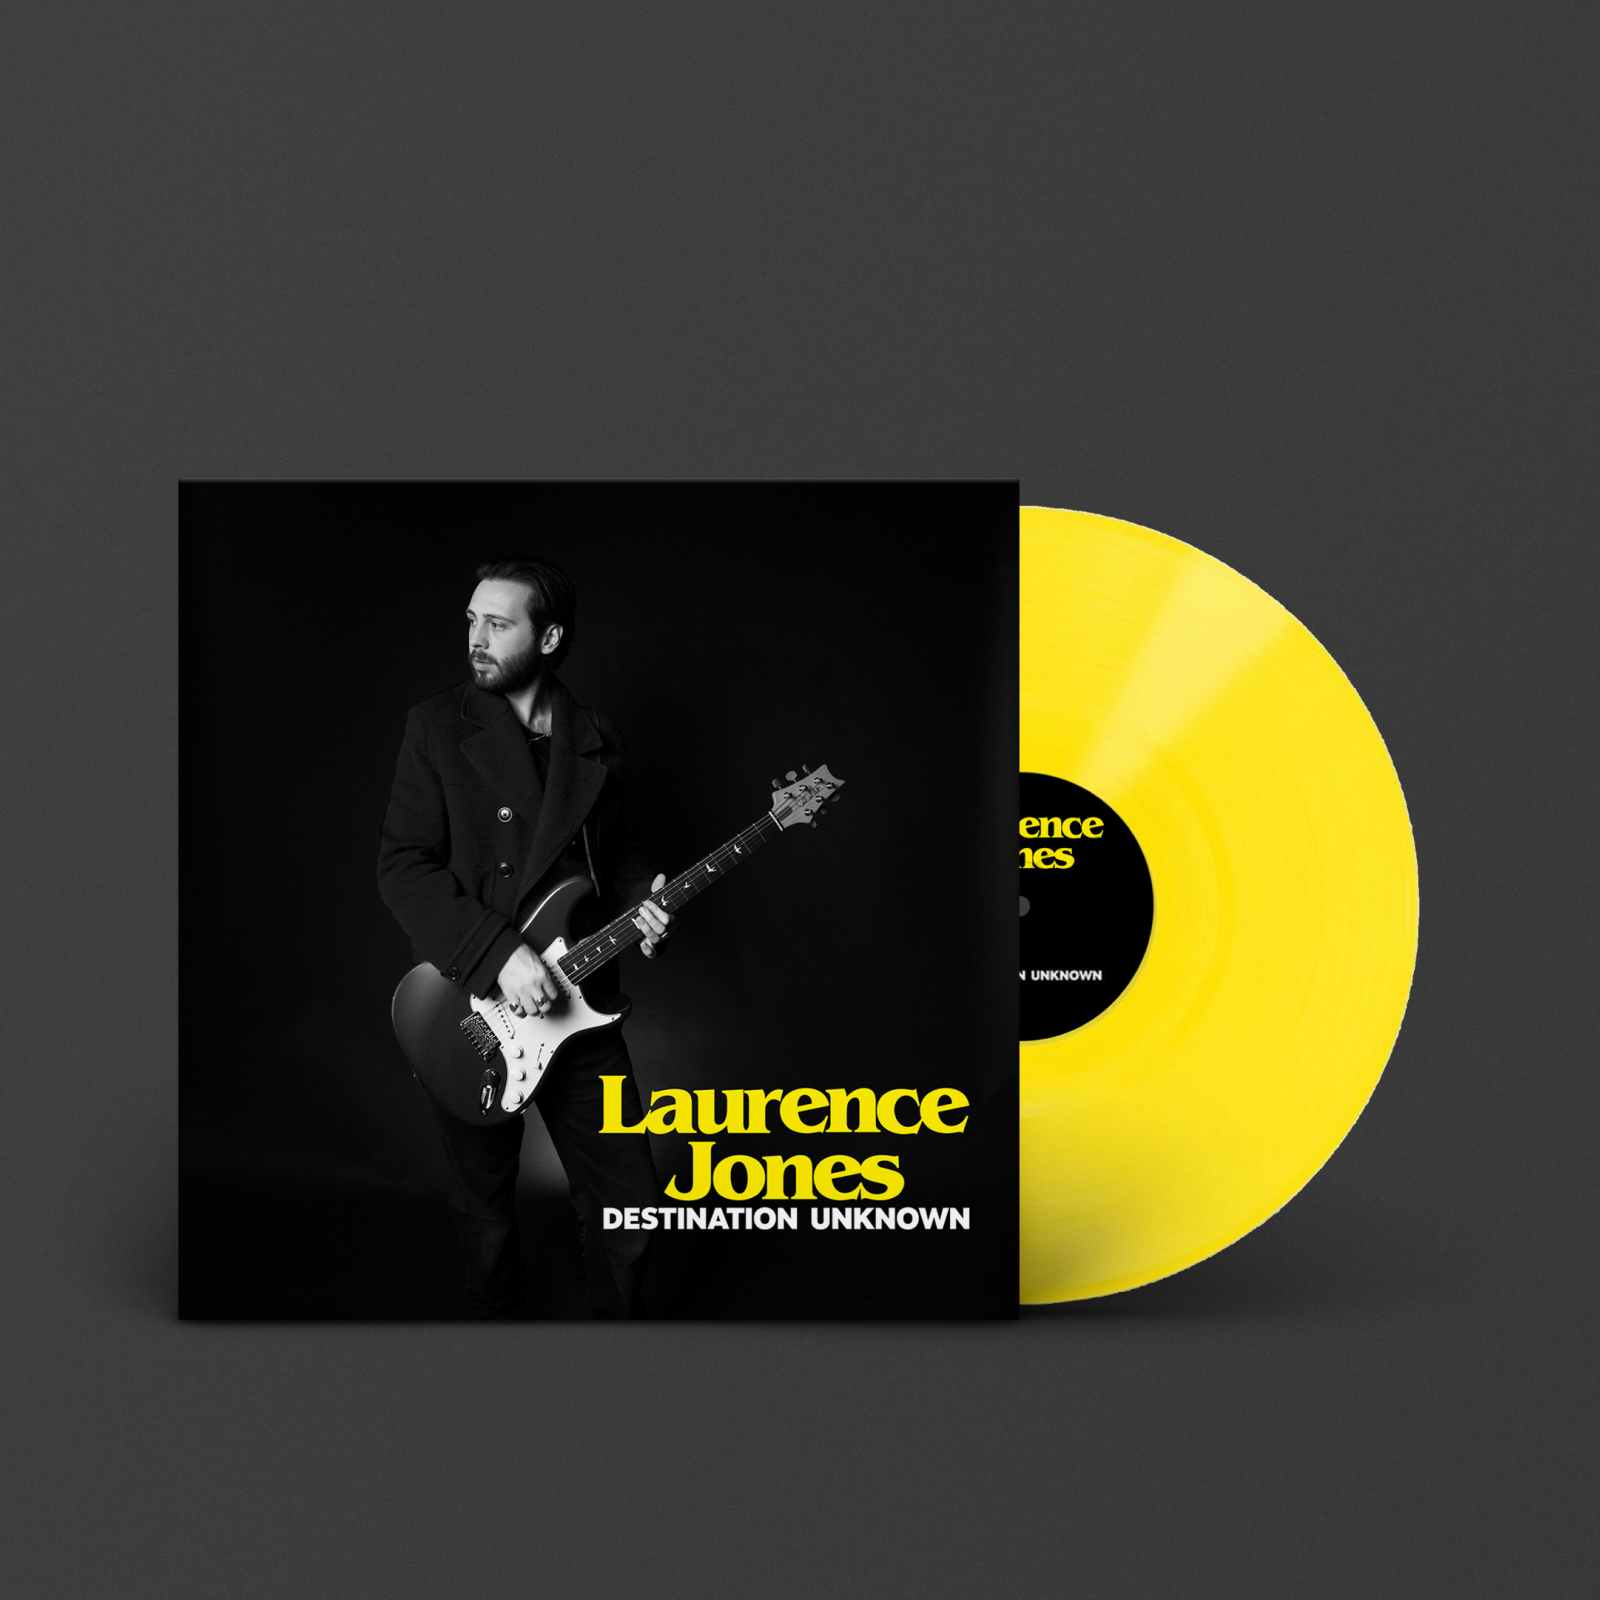 DESTINATION UNKNOWN de Laurence Jones, nouvel album propulsé par Marshall, avec le son soulful du blues électrique sur un LP jaune en édition limitée.